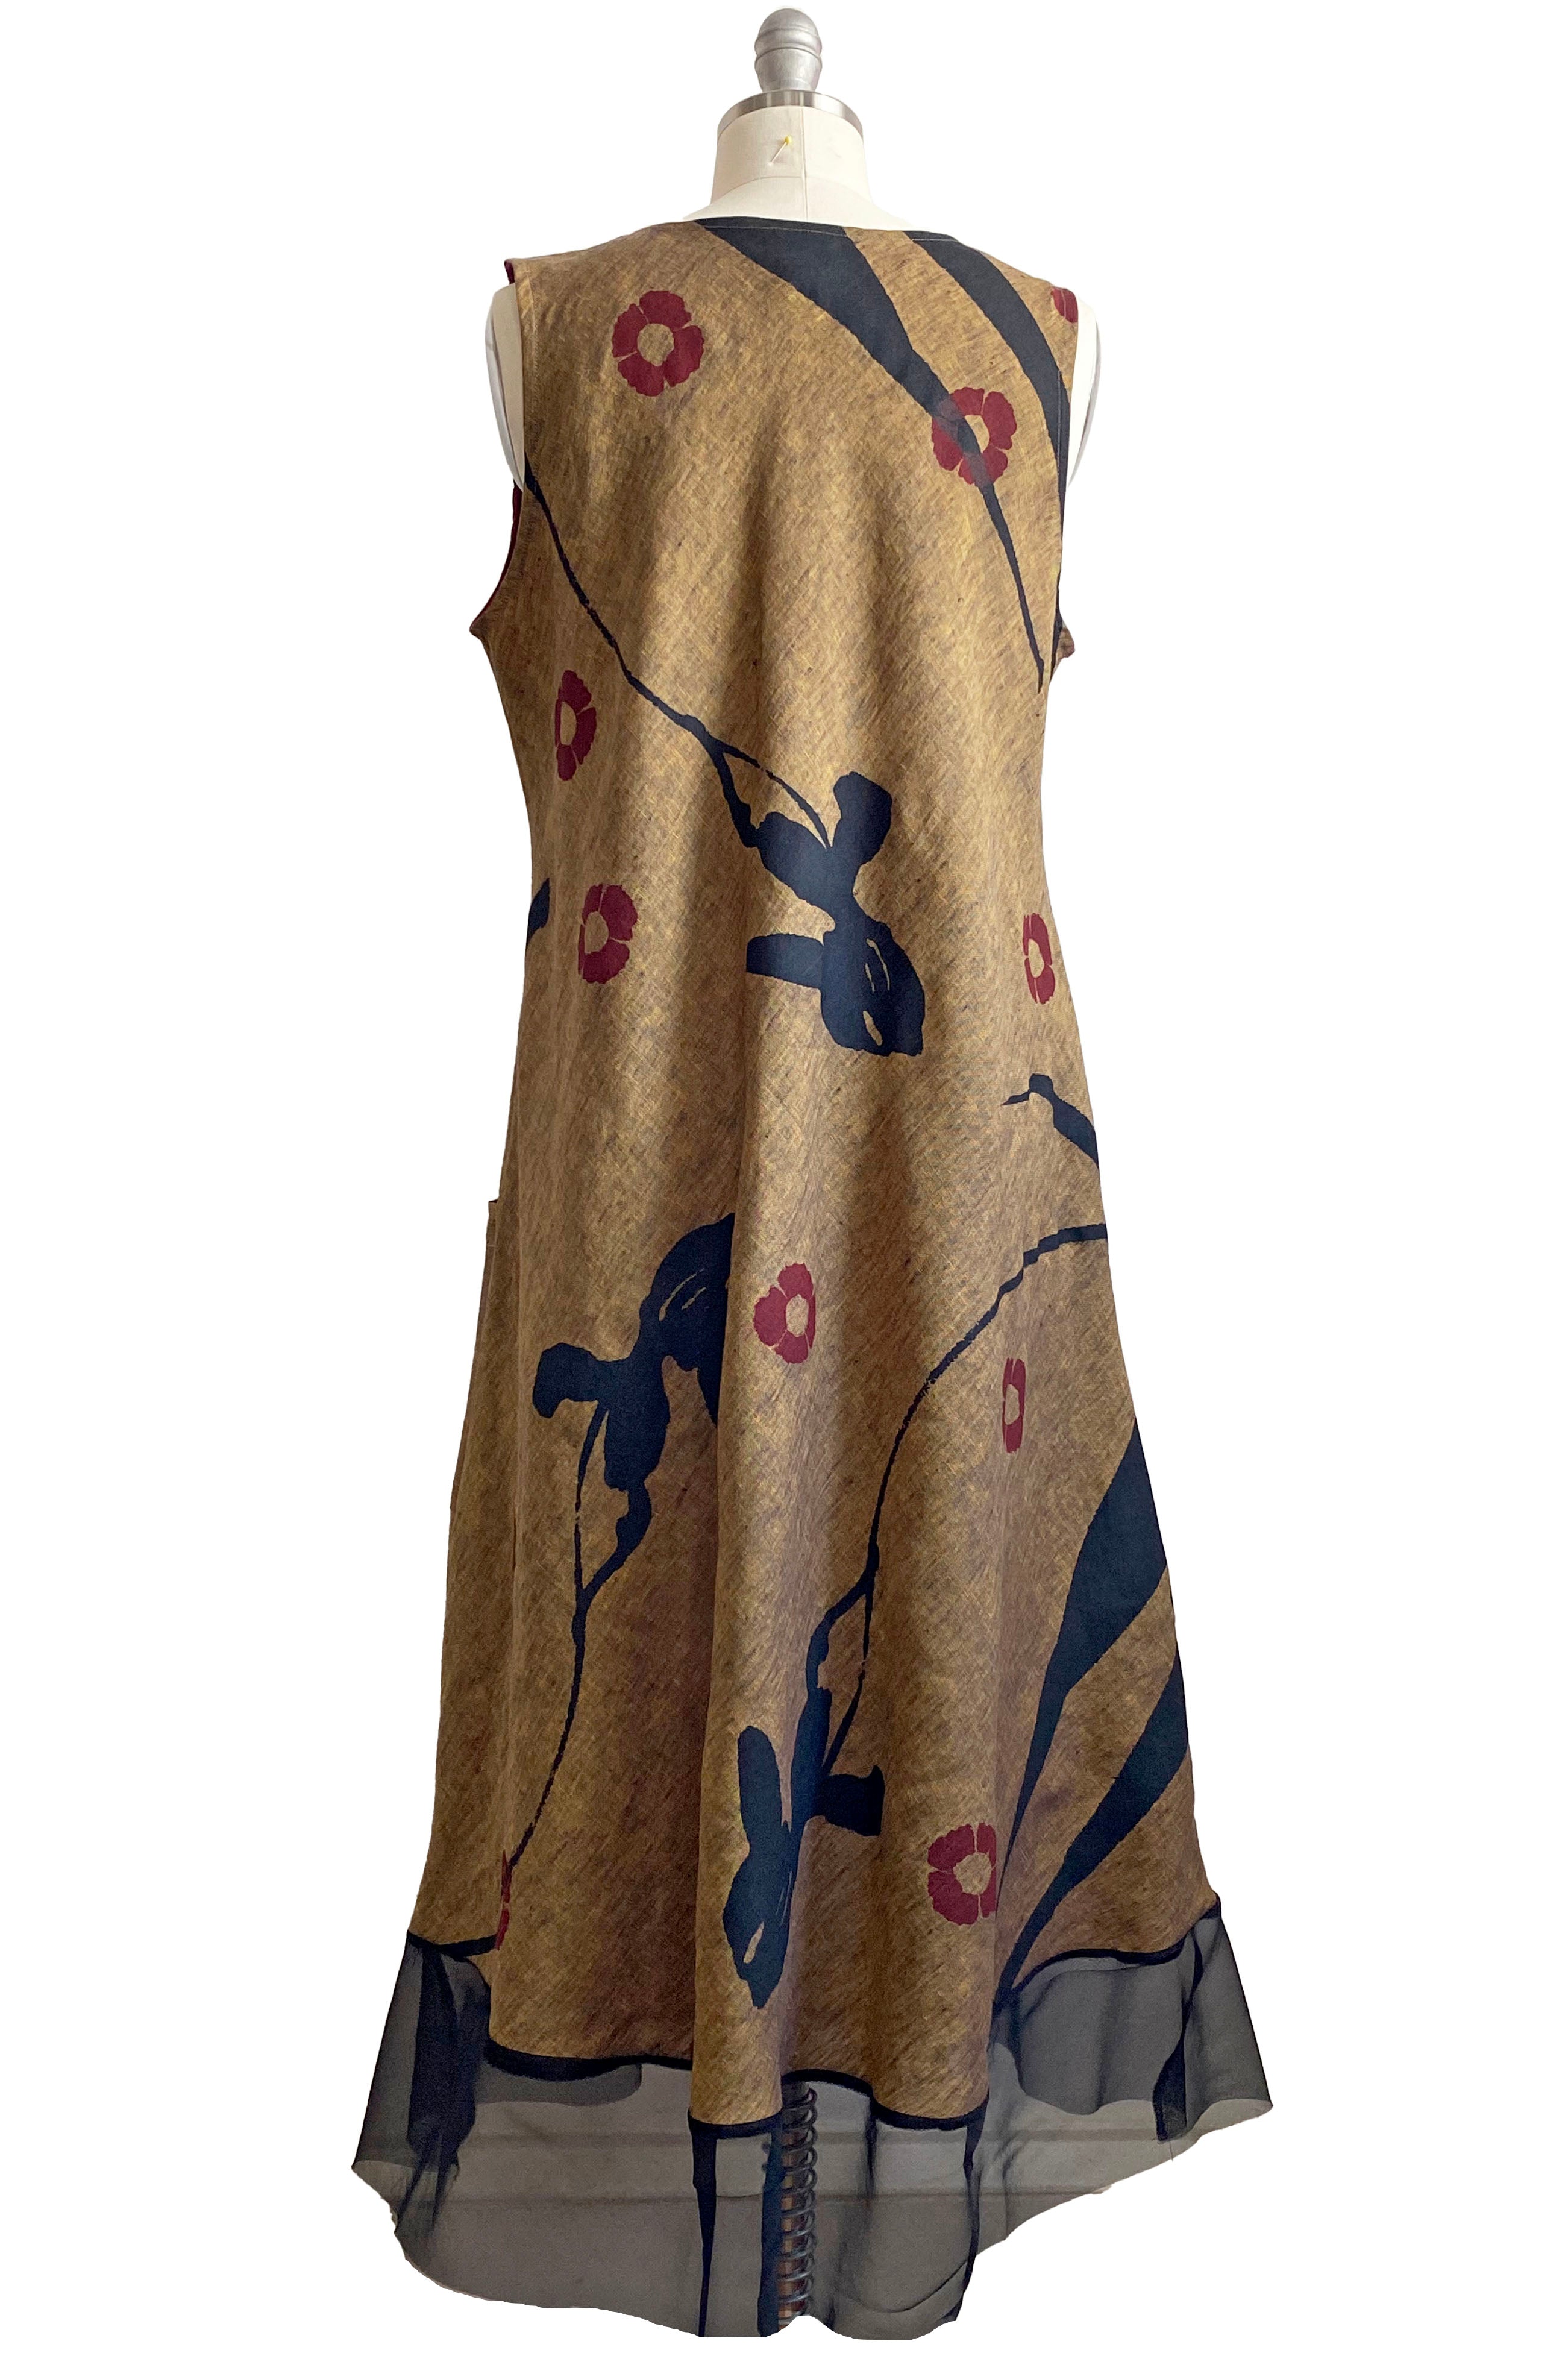 Emilia Dress w/ Poppy Print - Heathered Gold - M